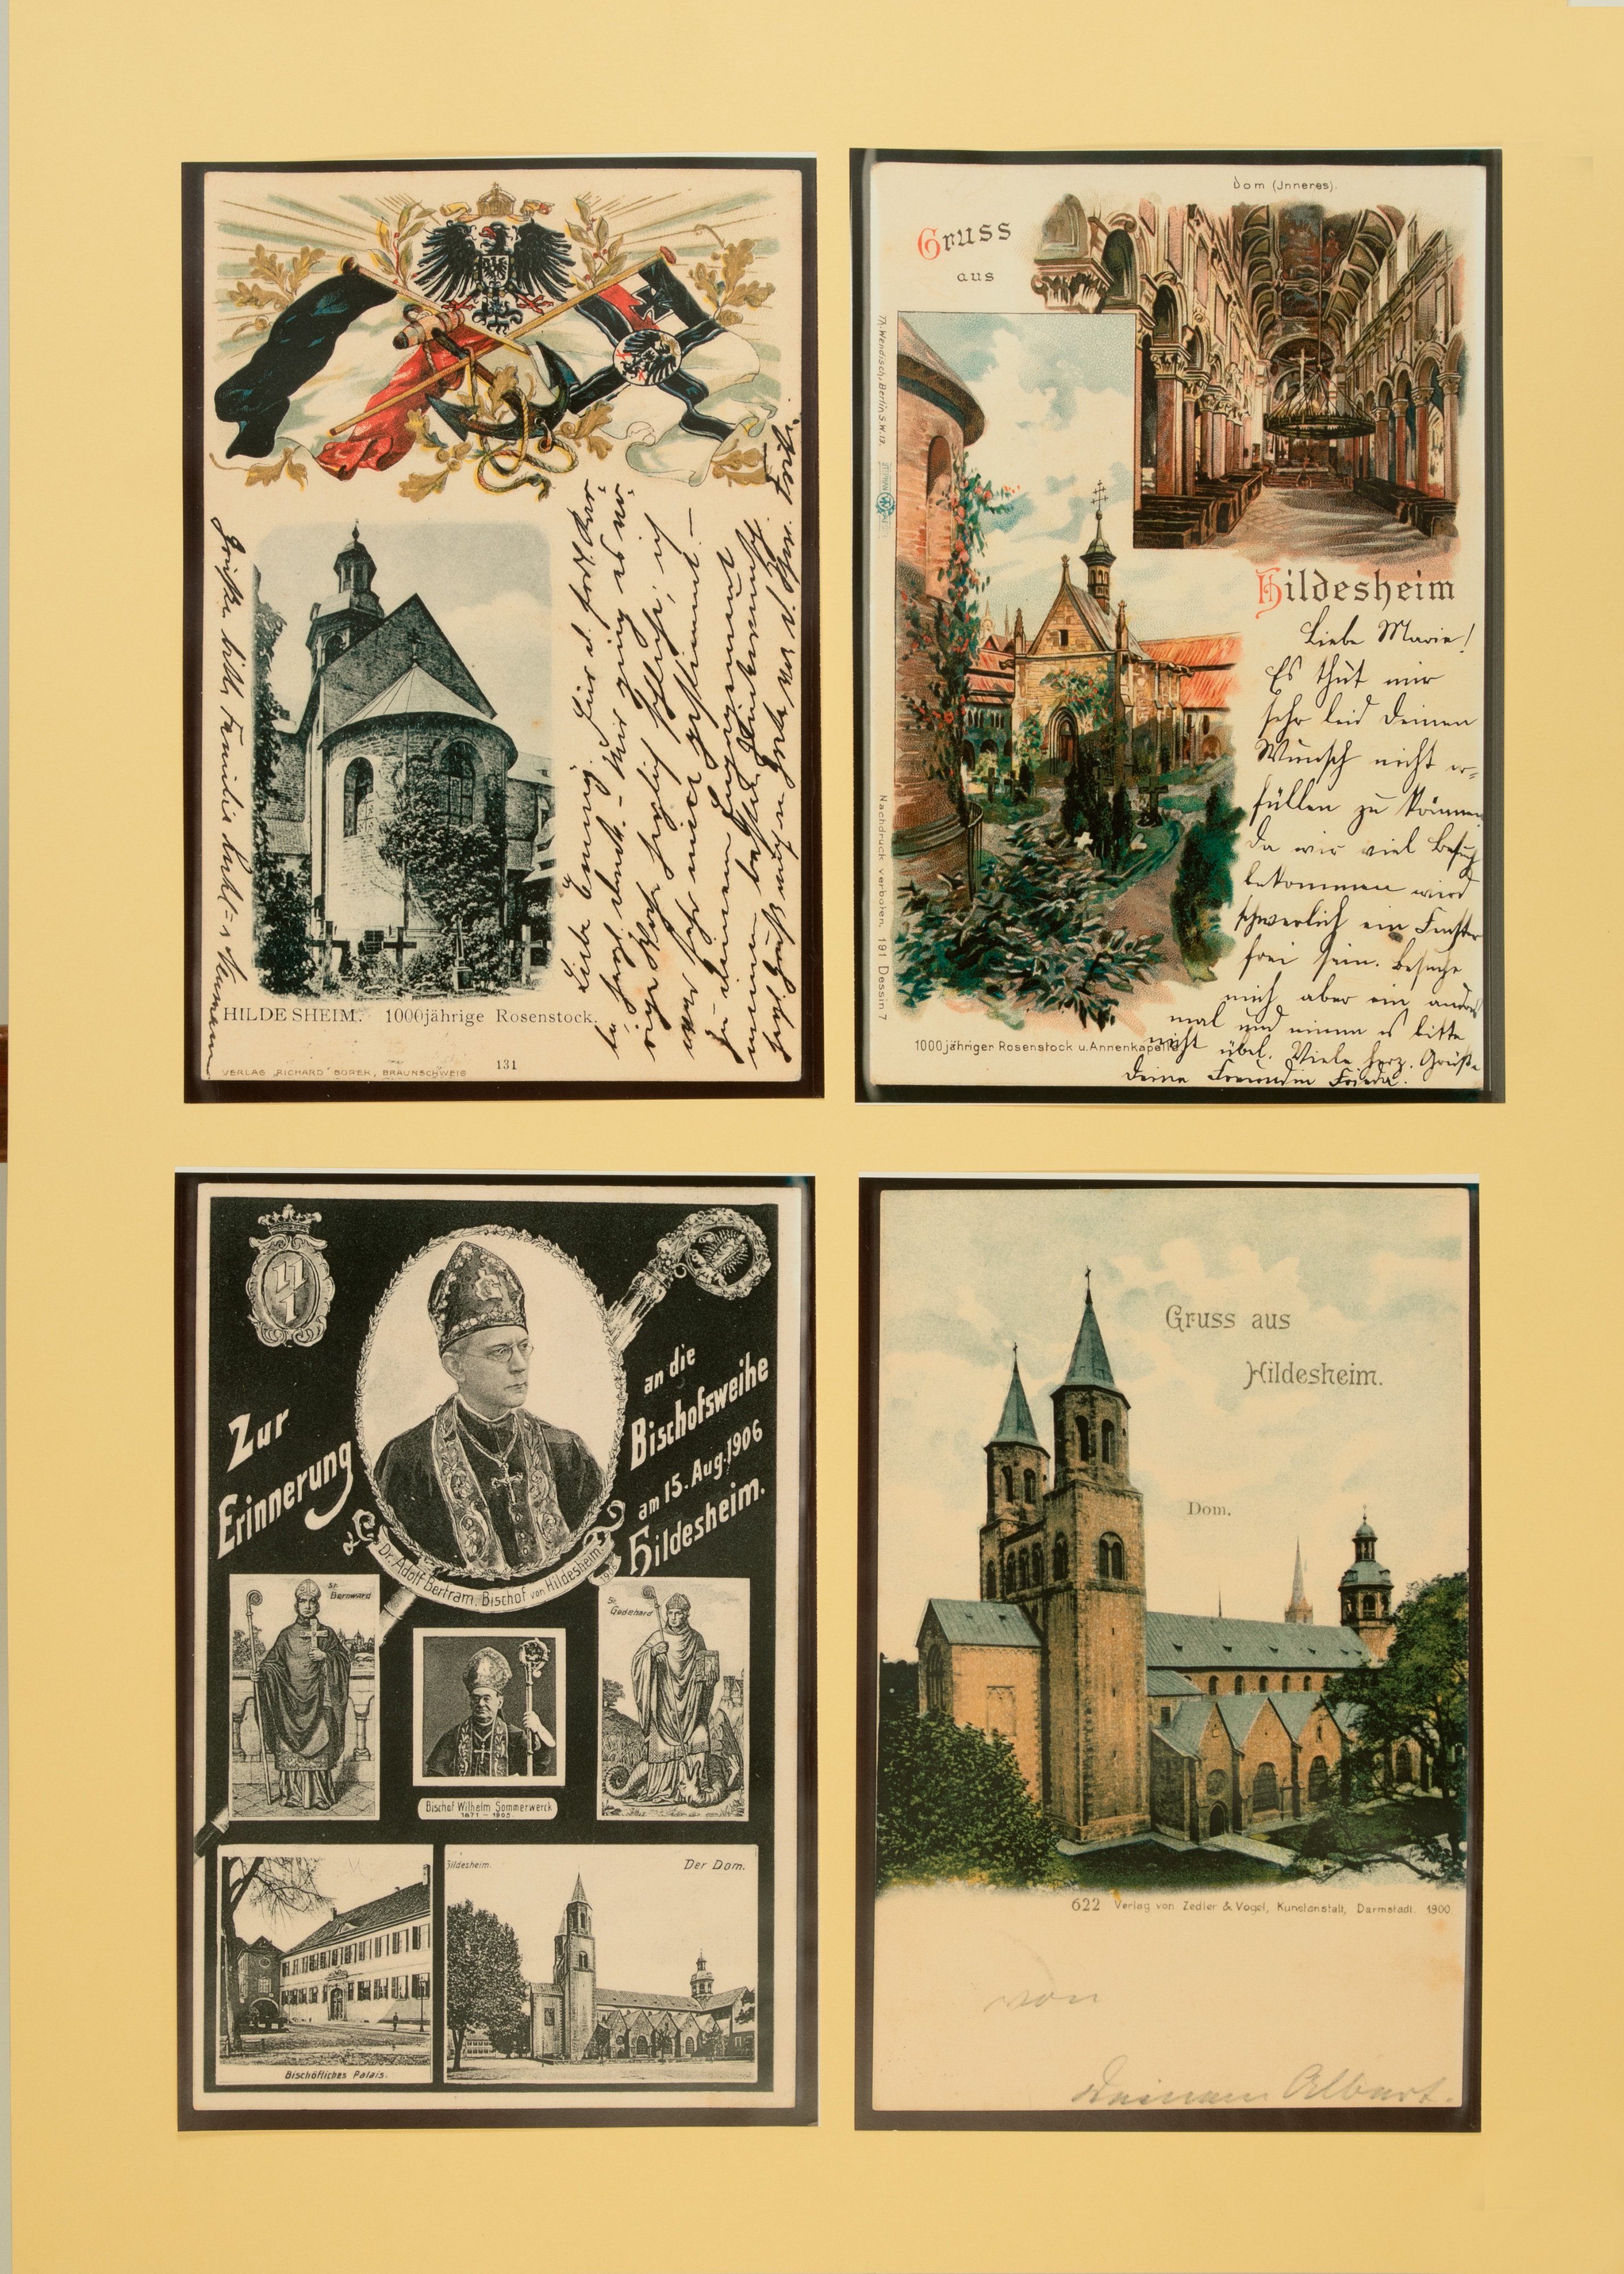 Wandbild mit Postkarten bezüglich des Hildesheimer Doms (Stiftung Schulmuseum der Universität Hildesheim CC BY-SA)